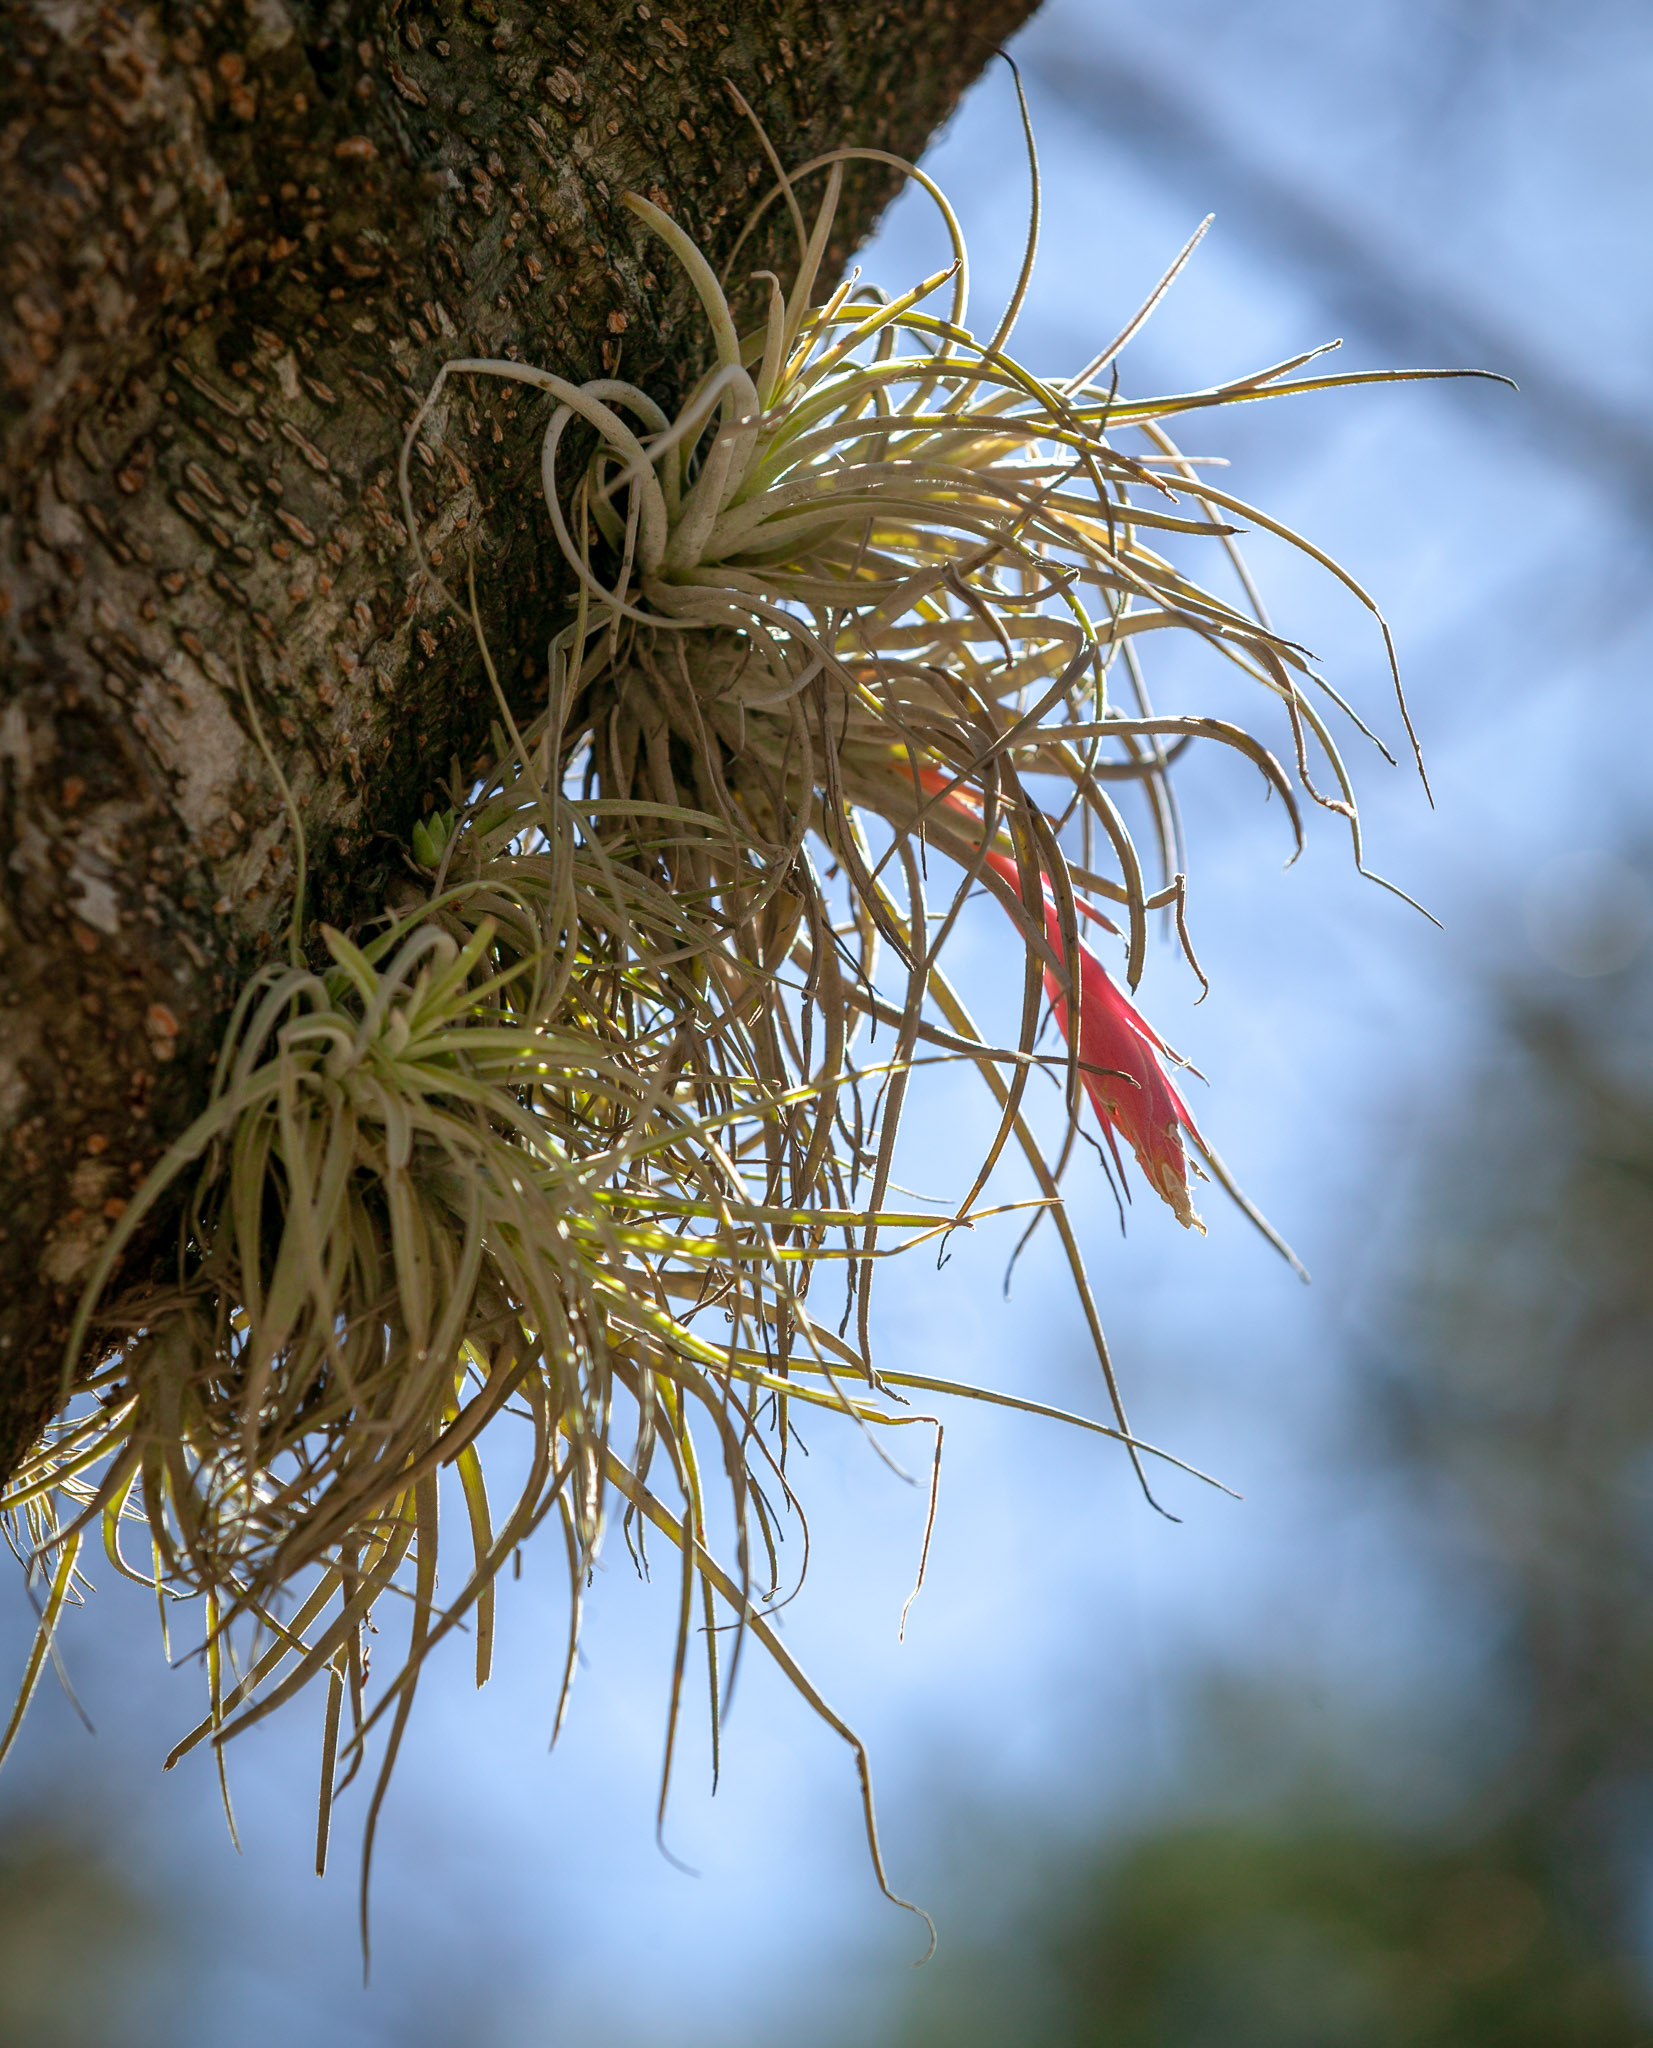 bromeliad growing on tree